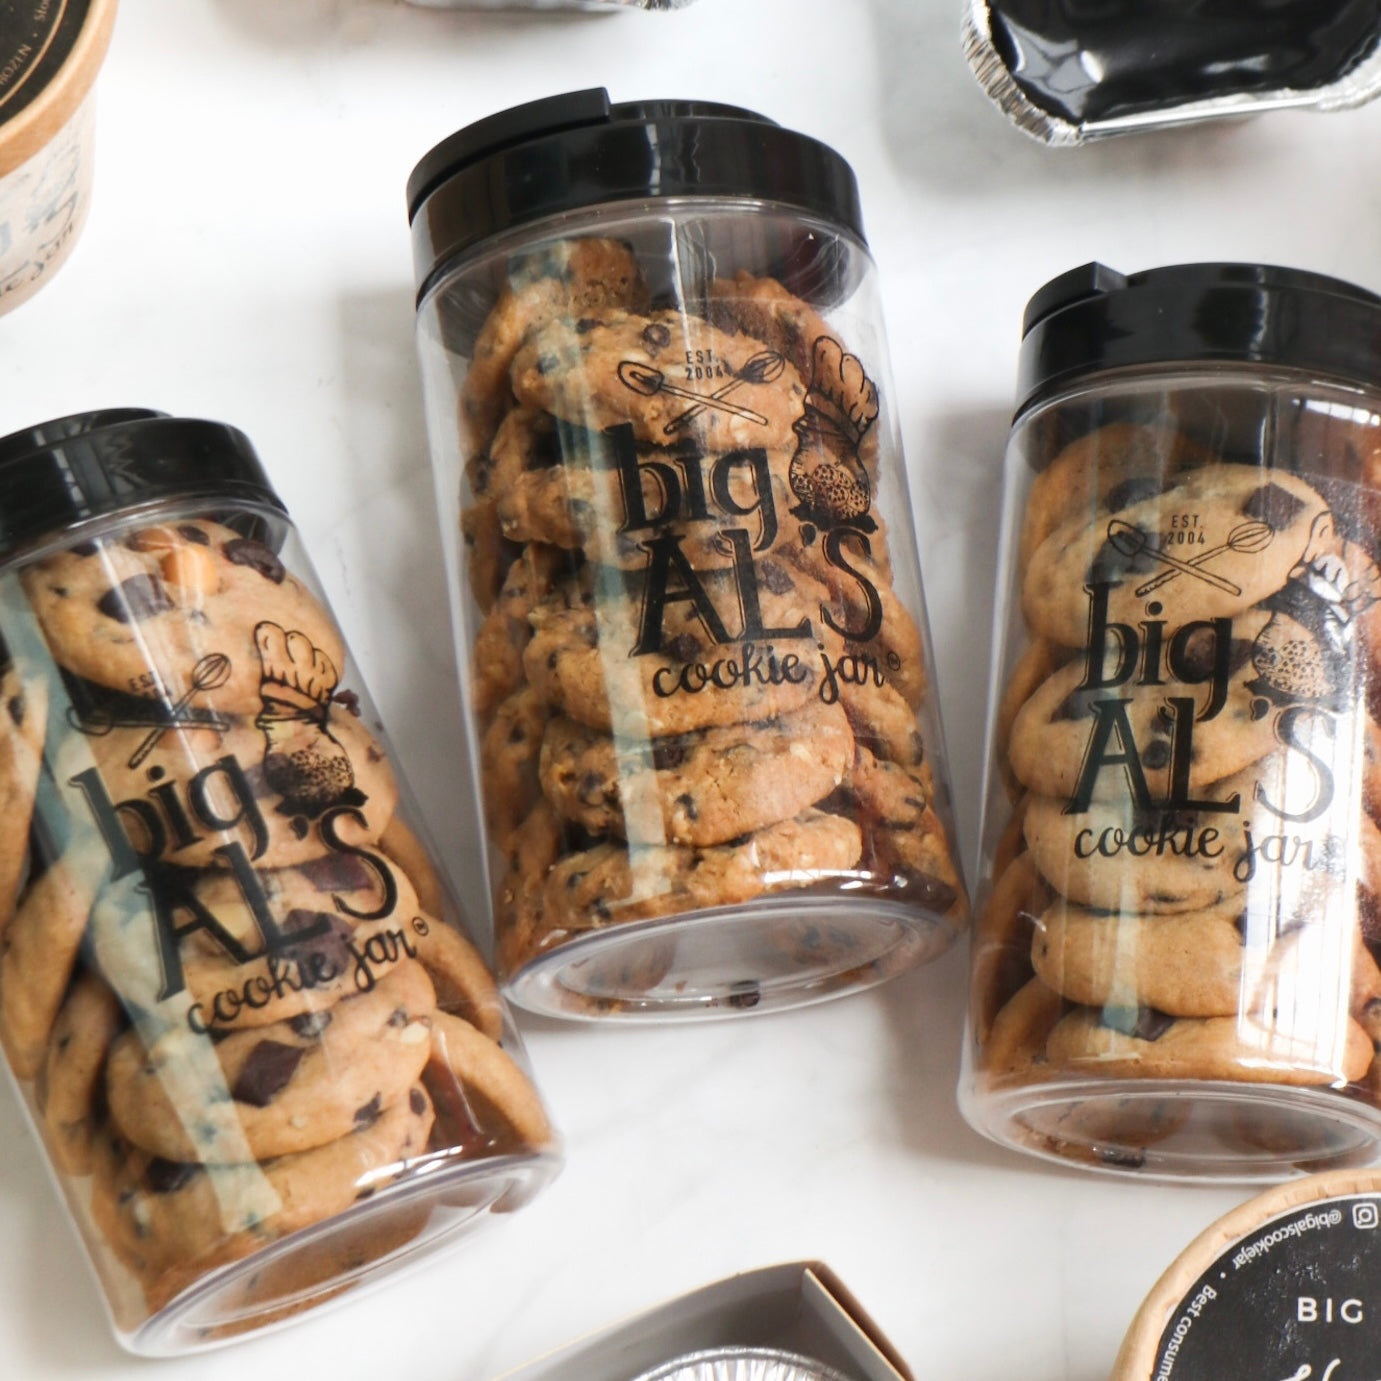 Cookie Jars by Big Al's – Big Al's Cookie Jar